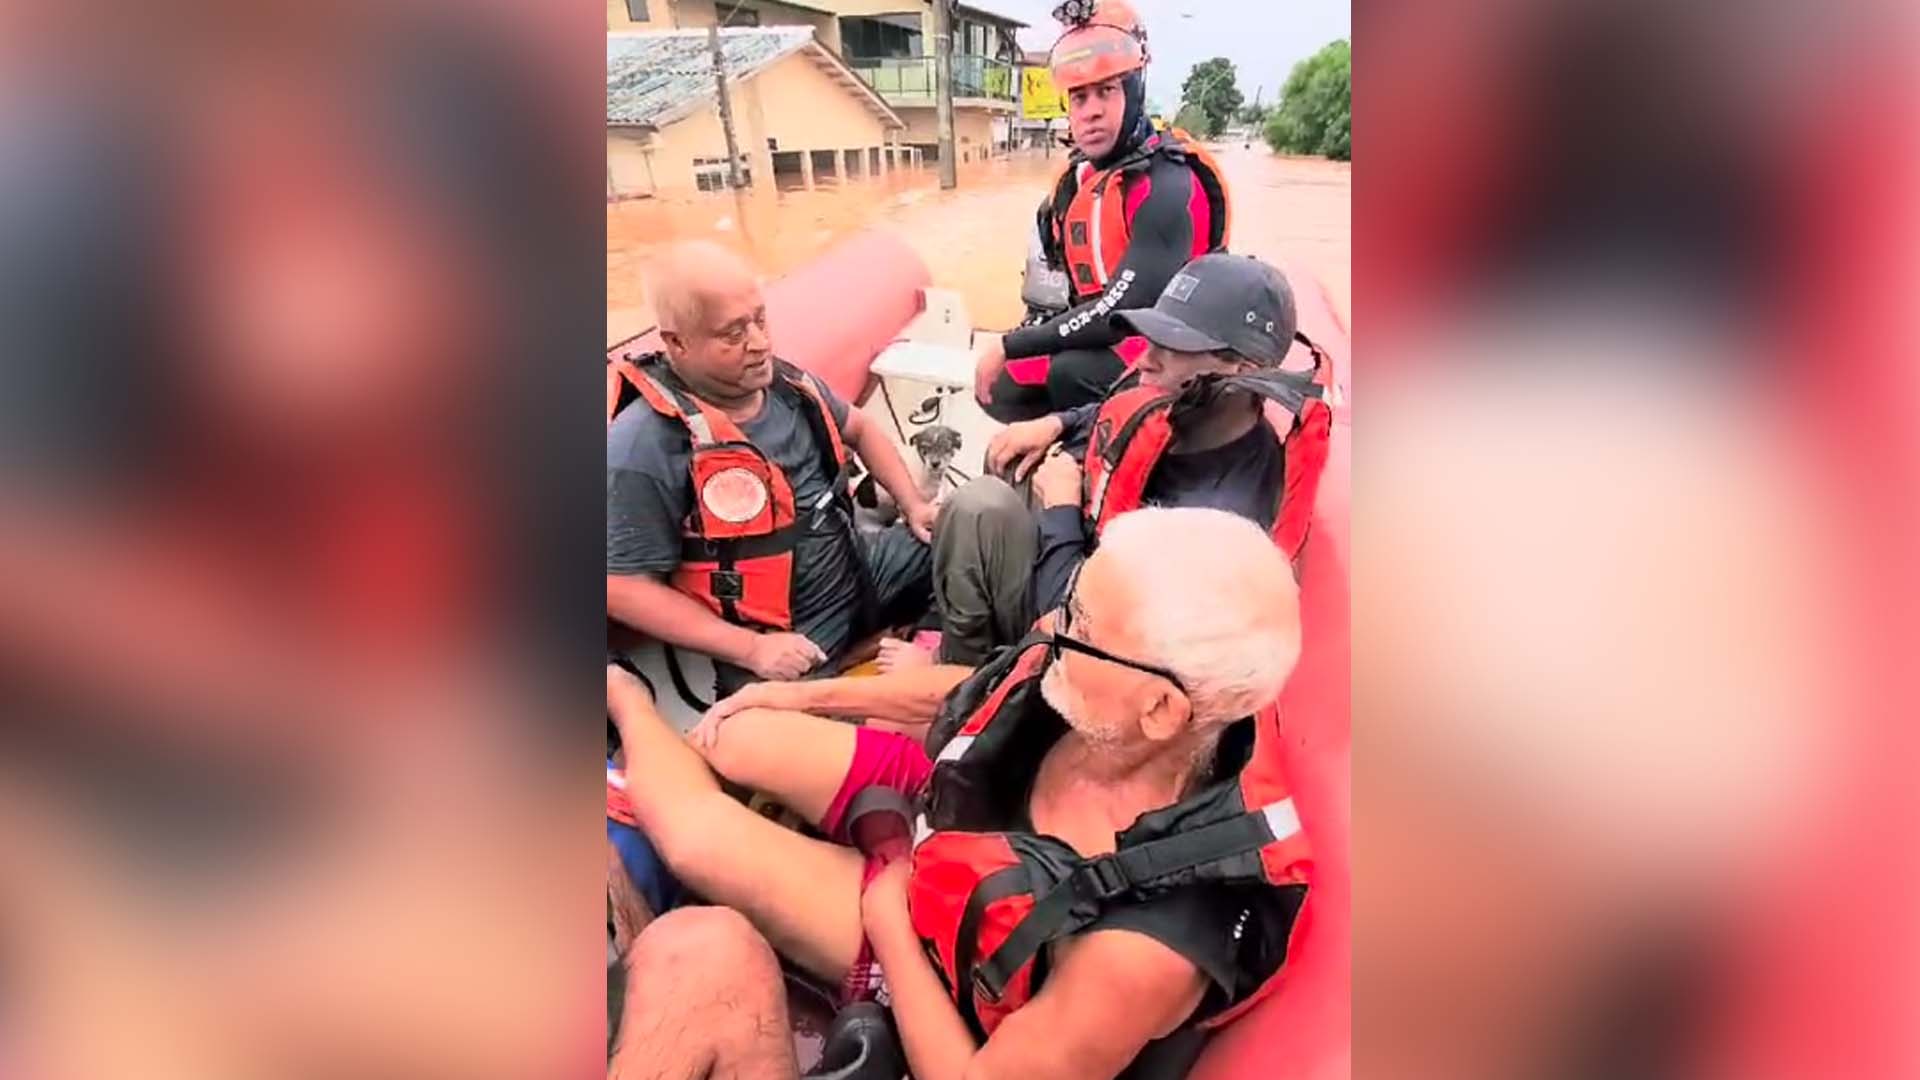 Bombeiros de SP encontram barco virado e resgatam quatro pessoas no RS